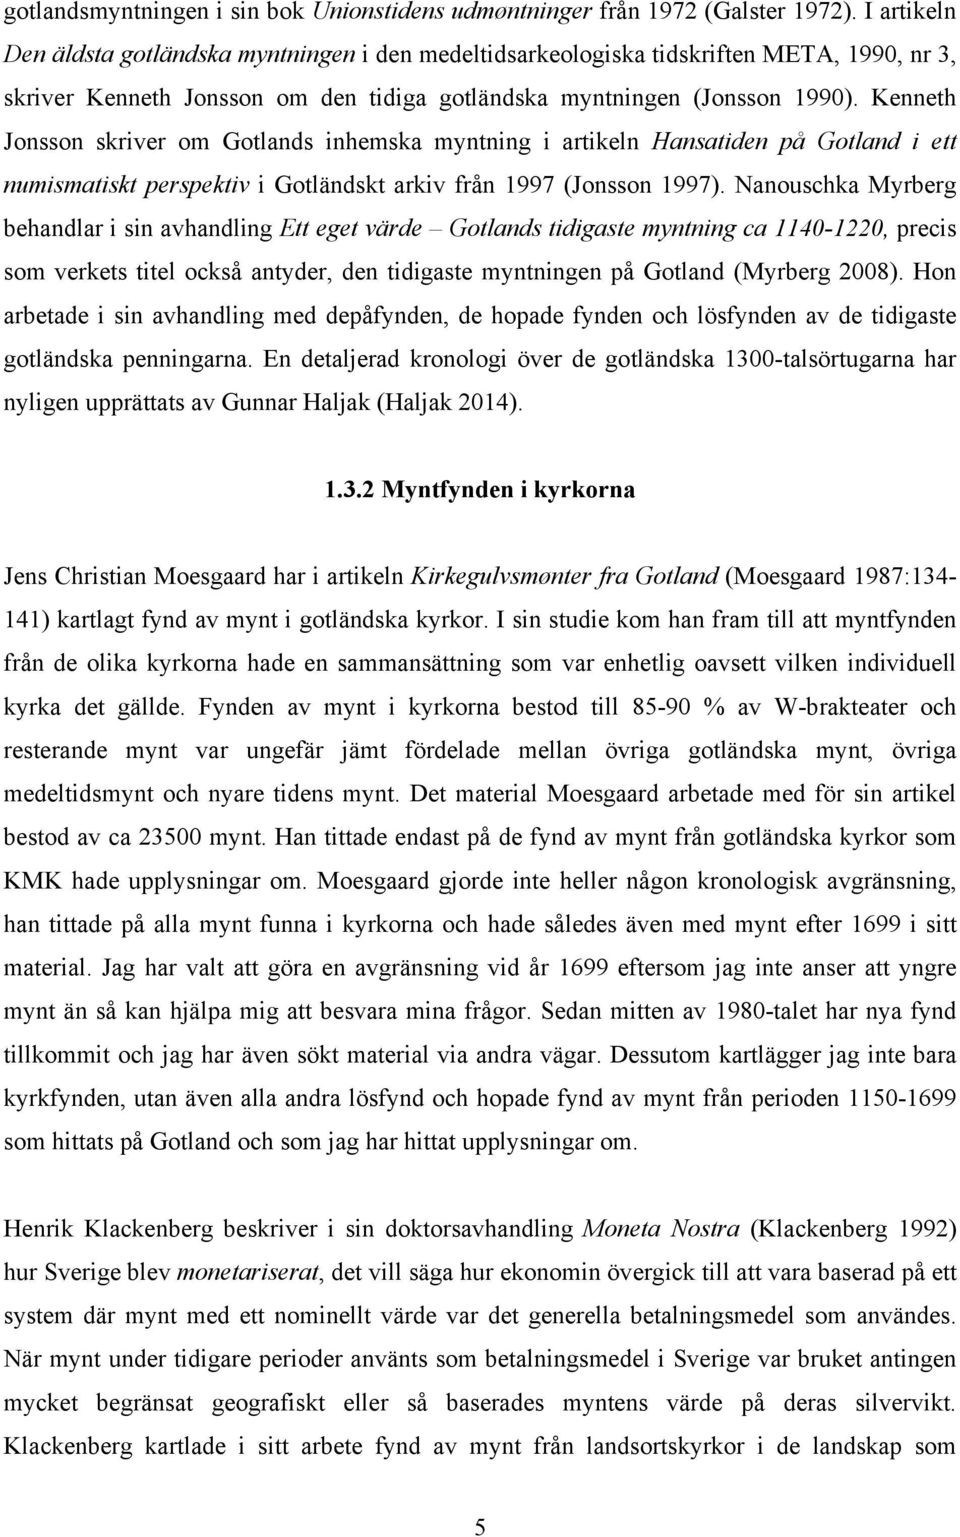 Kenneth Jonsson skriver om Gotlands inhemska myntning i artikeln Hansatiden på Gotland i ett numismatiskt perspektiv i Gotländskt arkiv från 1997 (Jonsson 1997).